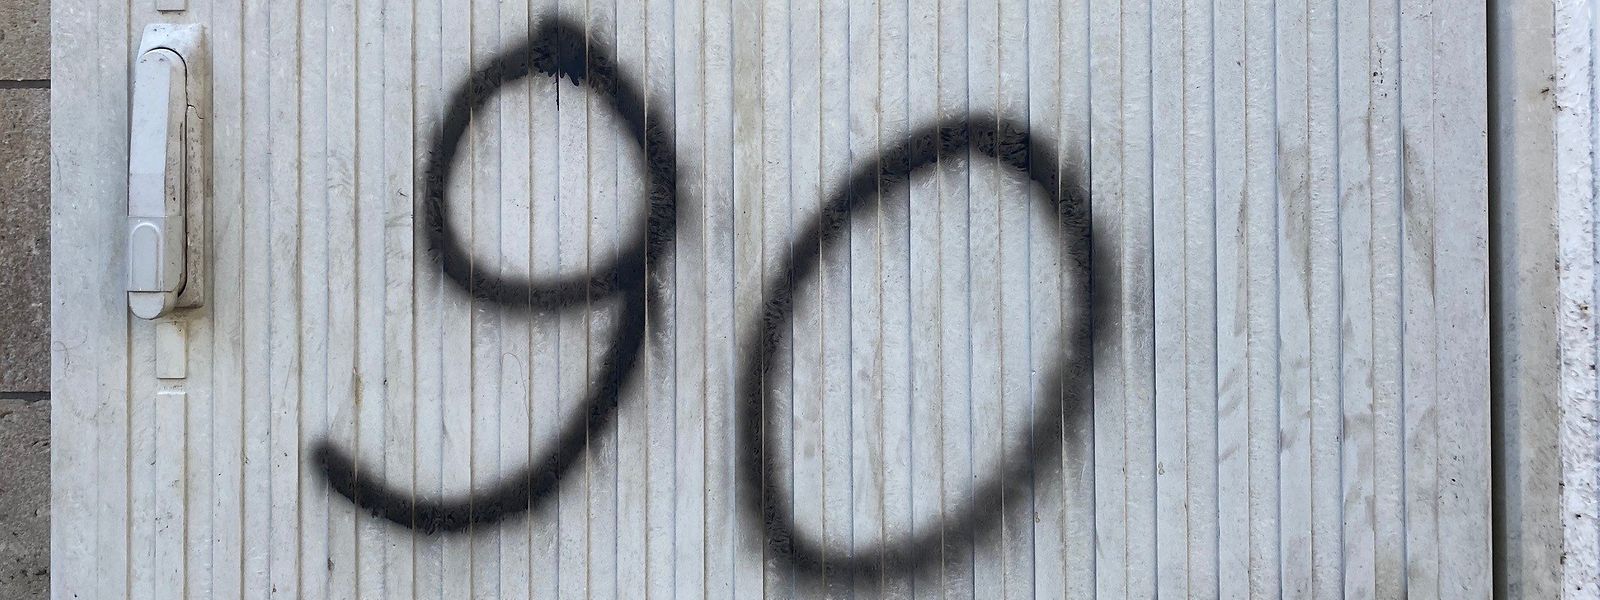 Depuis plusieurs semaines, les graffitis portant le chiffre "90" se multiplient "comme des champignons", indiquent les autorités locales.